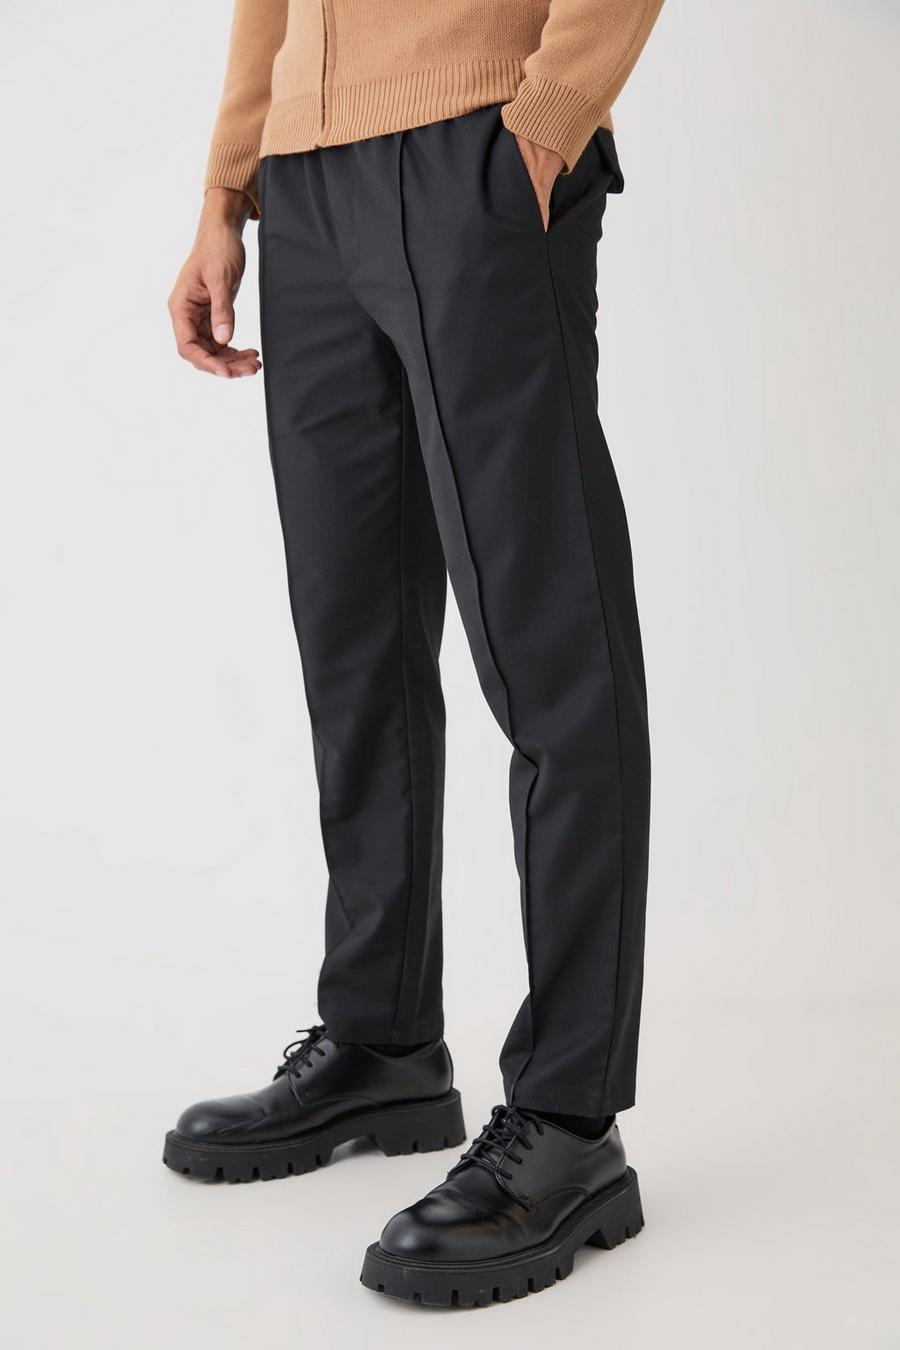 Pantalón texturizado entallado holgado con cinturón, Black